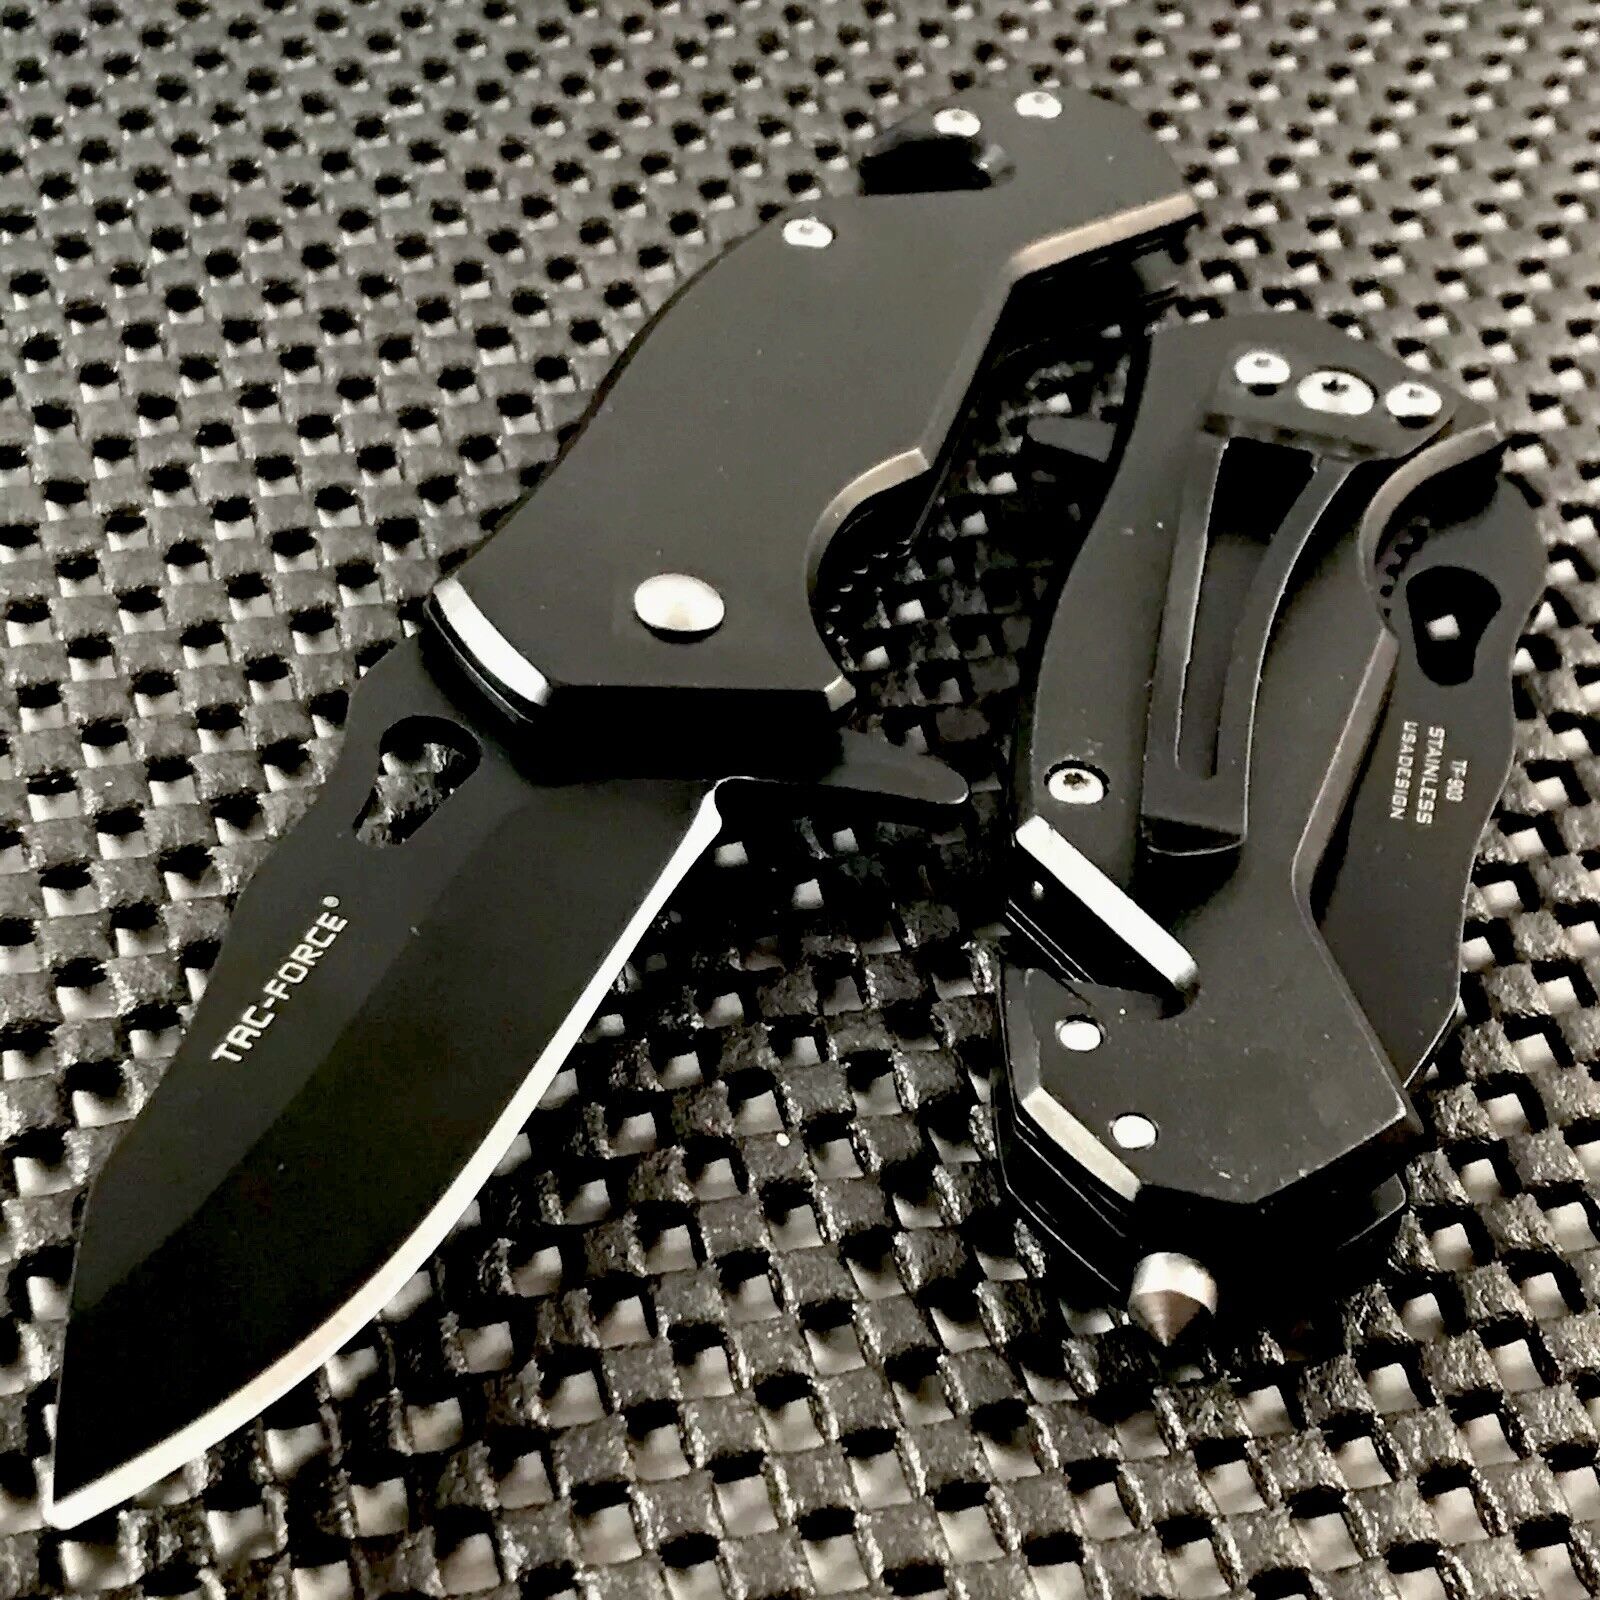 TAC FORCE 6.5" SPRING ASSISTED TACTICAL FOLDING POCKET KNIFE Blade Assist Open Tac-Force TF-903BK